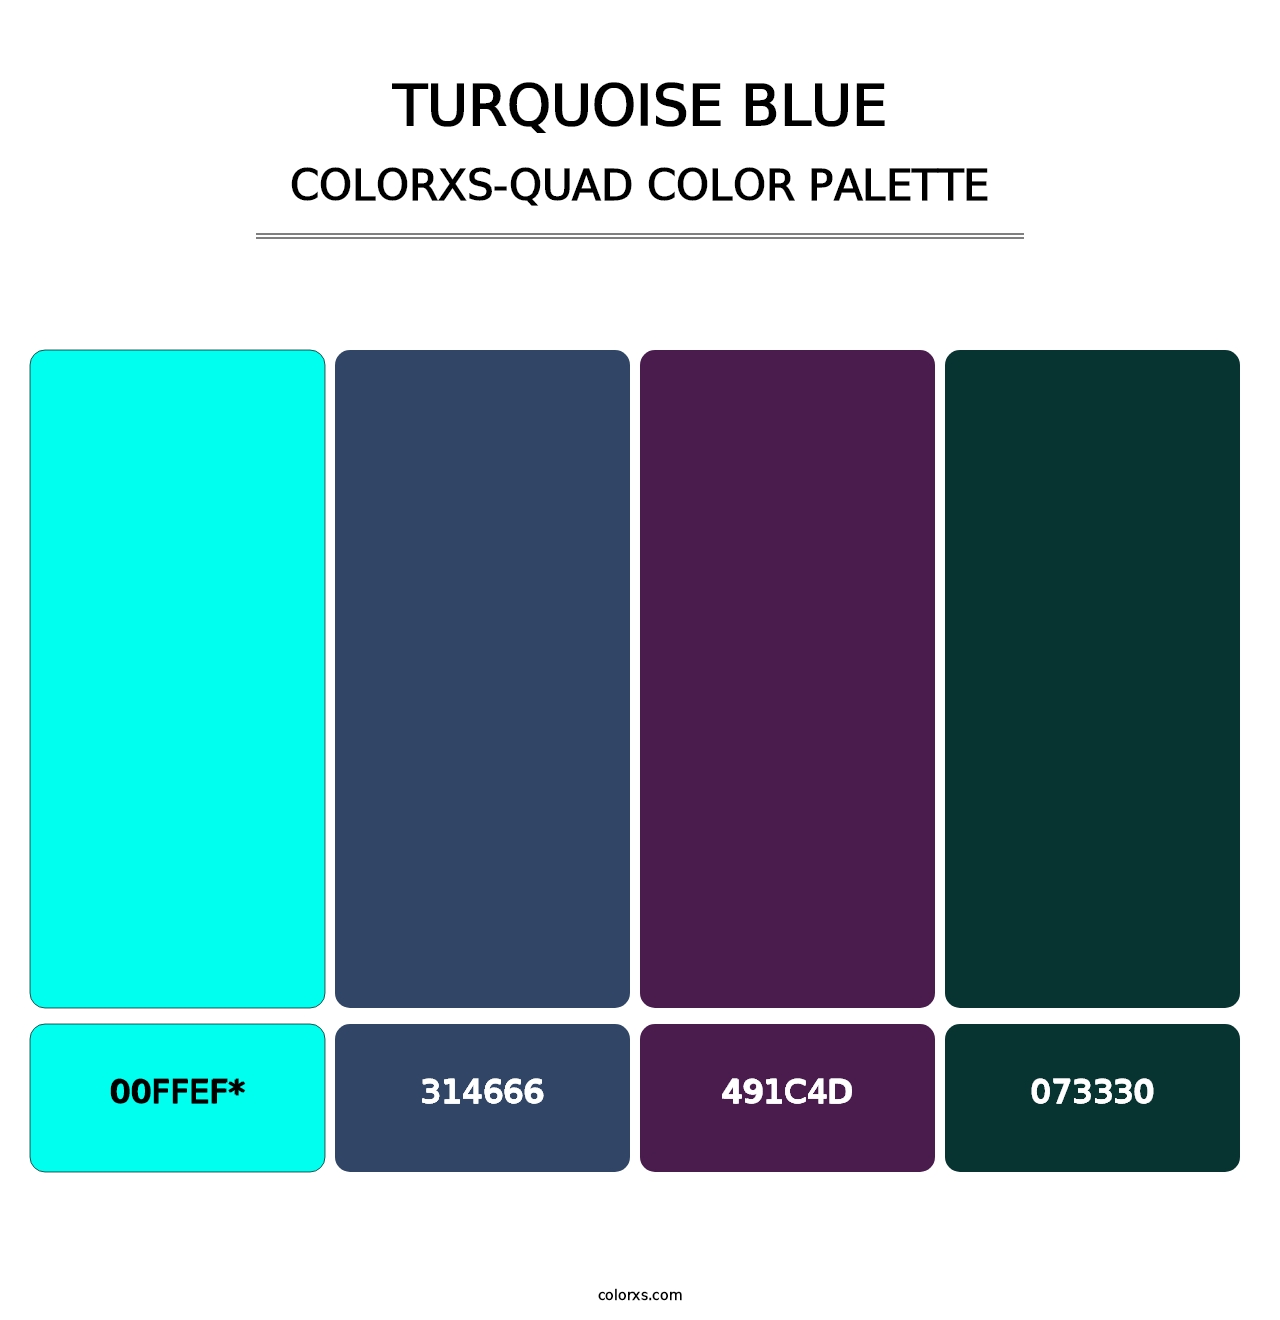 Turquoise Blue - Colorxs Quad Palette